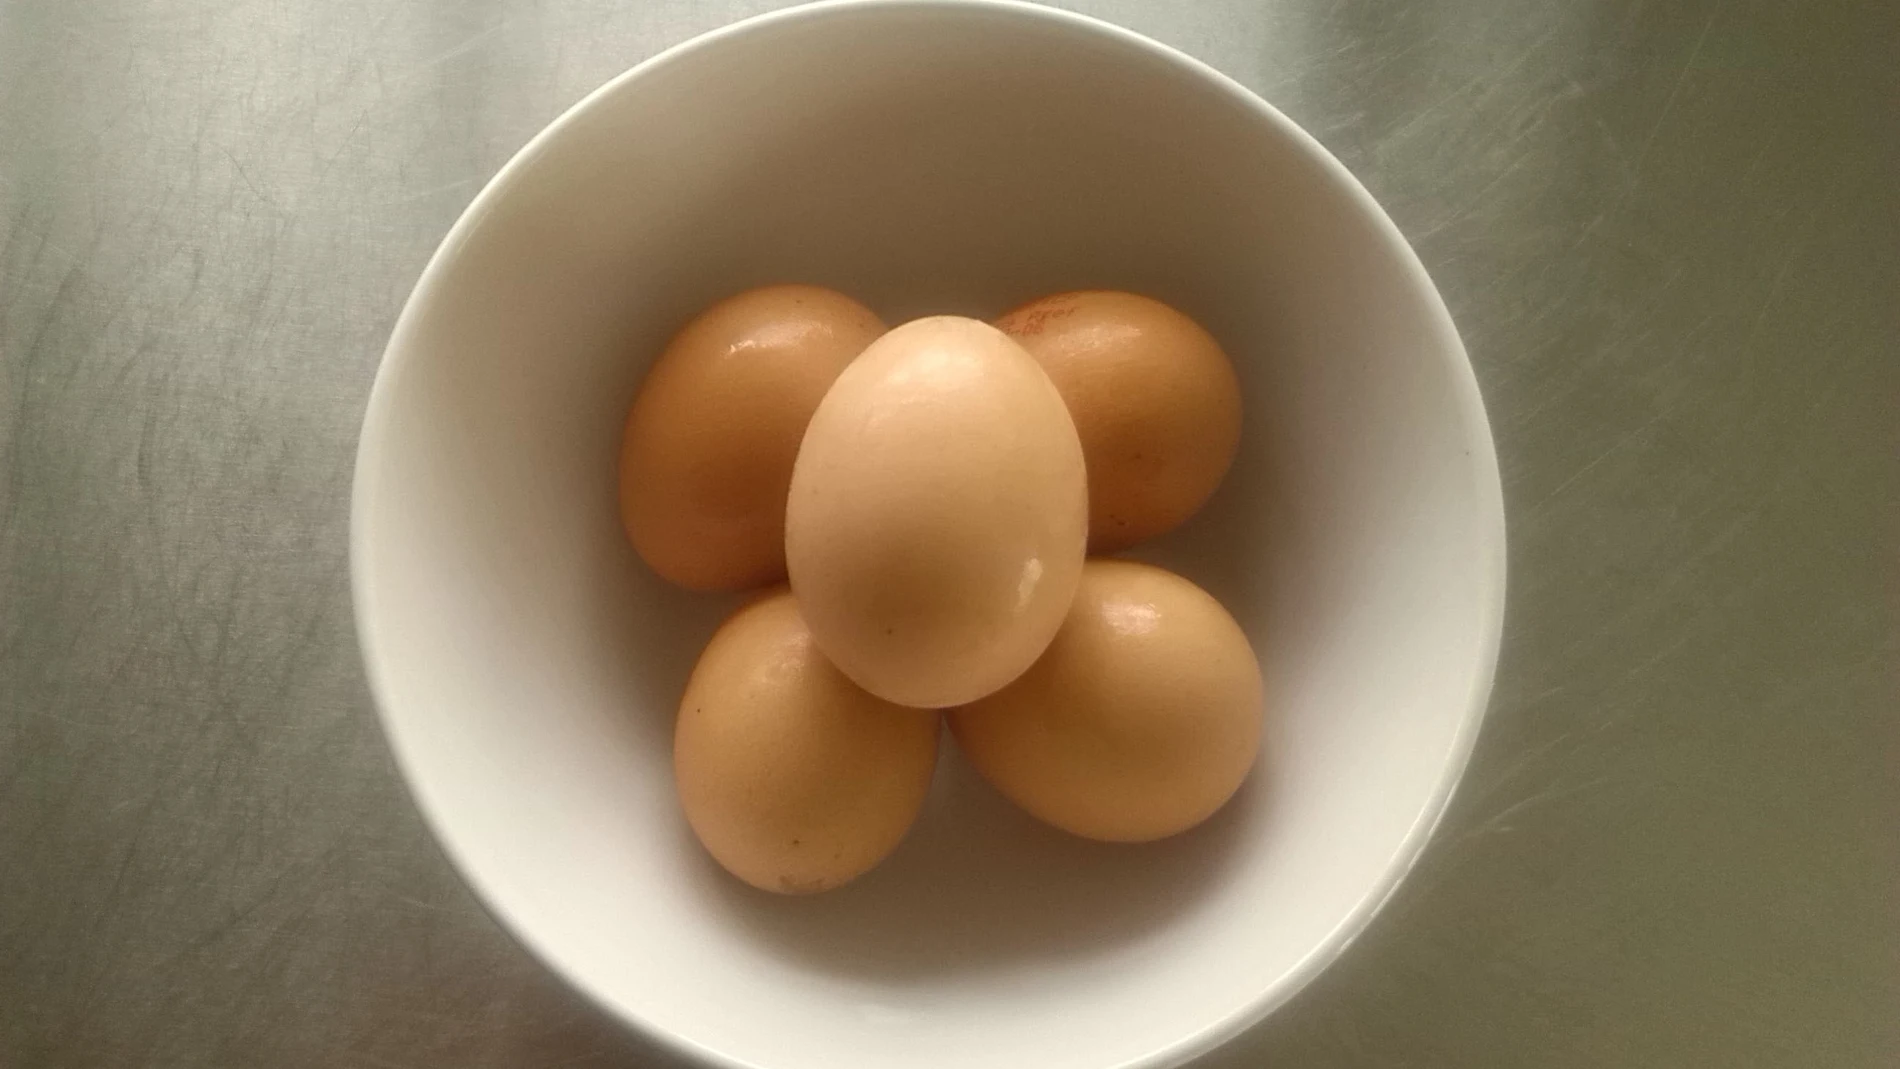 Un palto con huevos, en una imagen de archivo